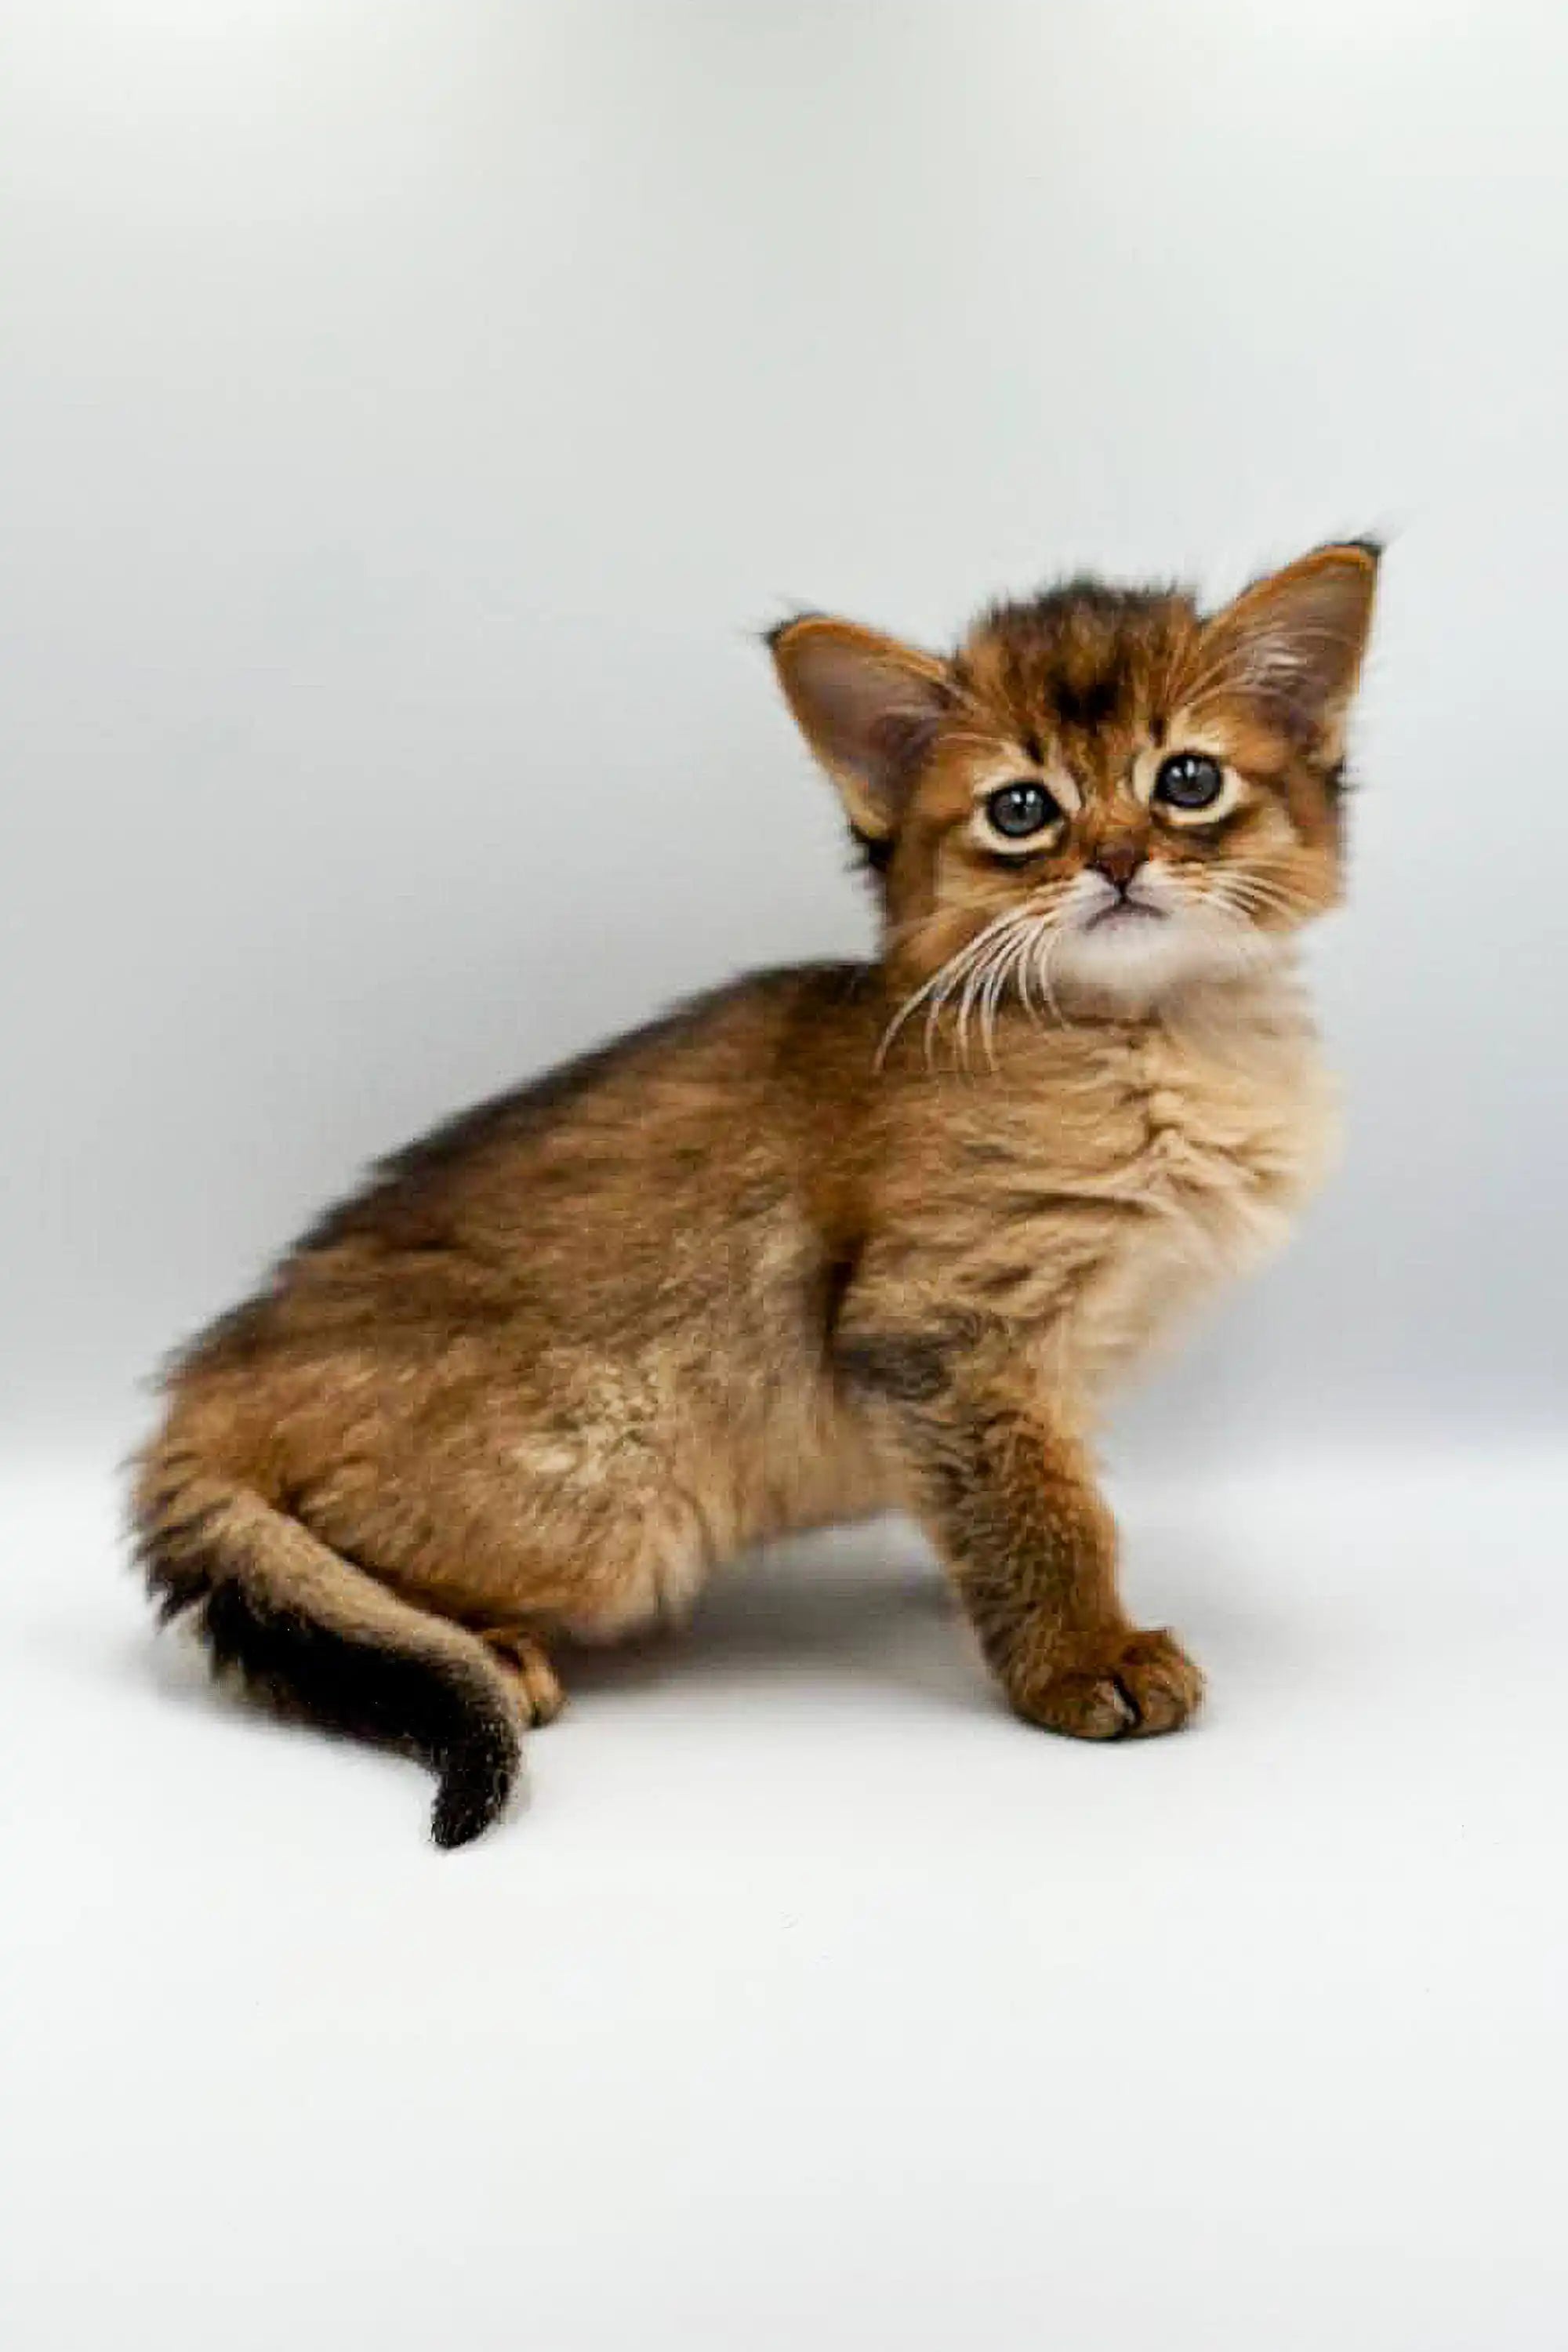 Somali Kittens For Sale Aglaya | Kitten